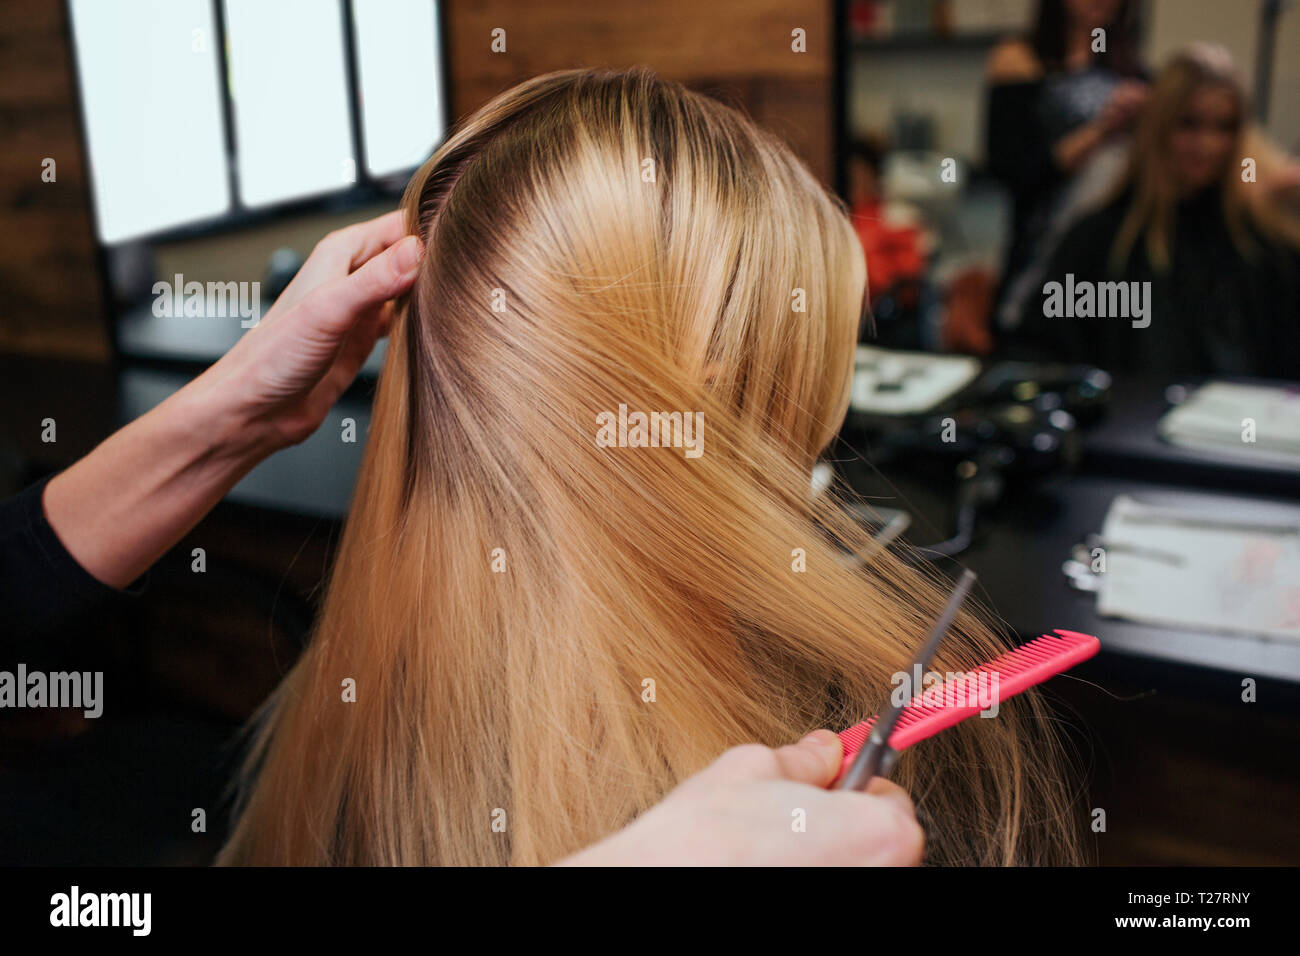 Peluquero manos peinando el cabello rubio antes de procedimientos para el cuidado del cabello en el salón de belleza Foto de stock